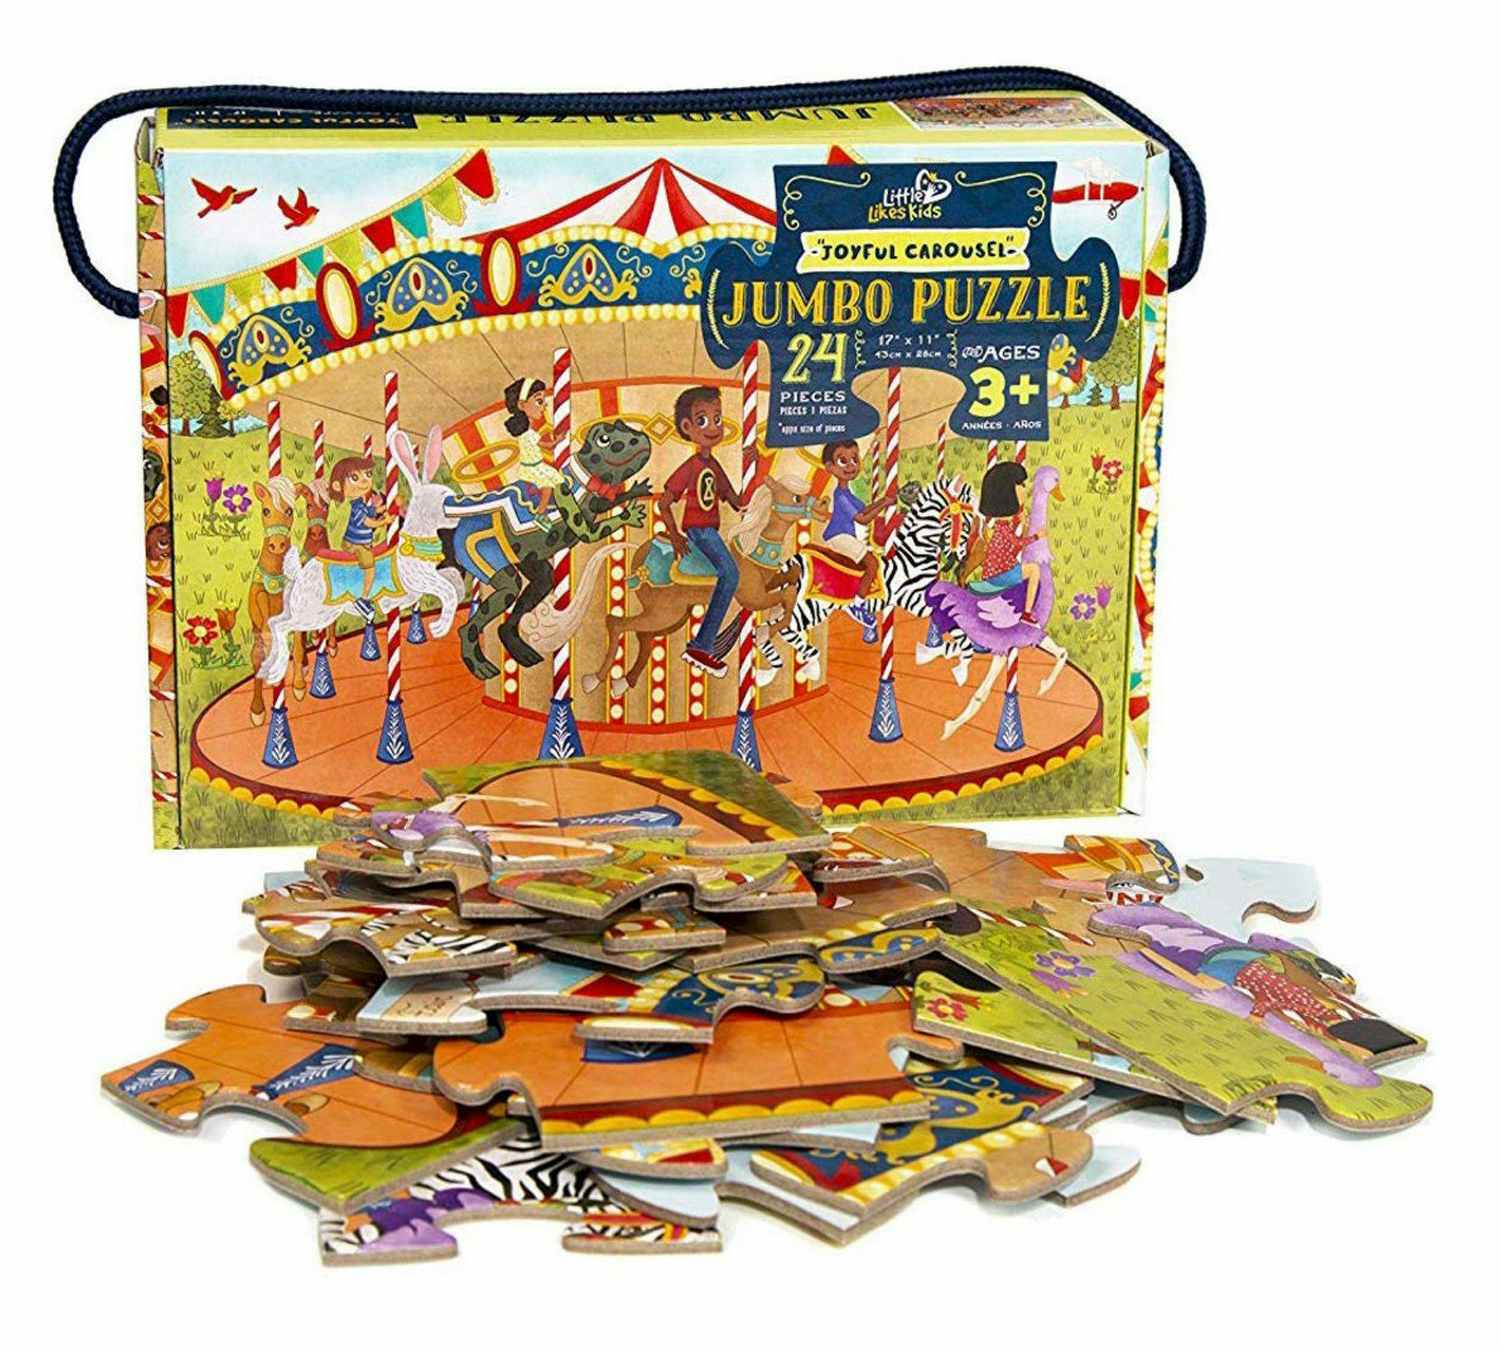 Joyful Carousel Kids' Jumbo Puzzle